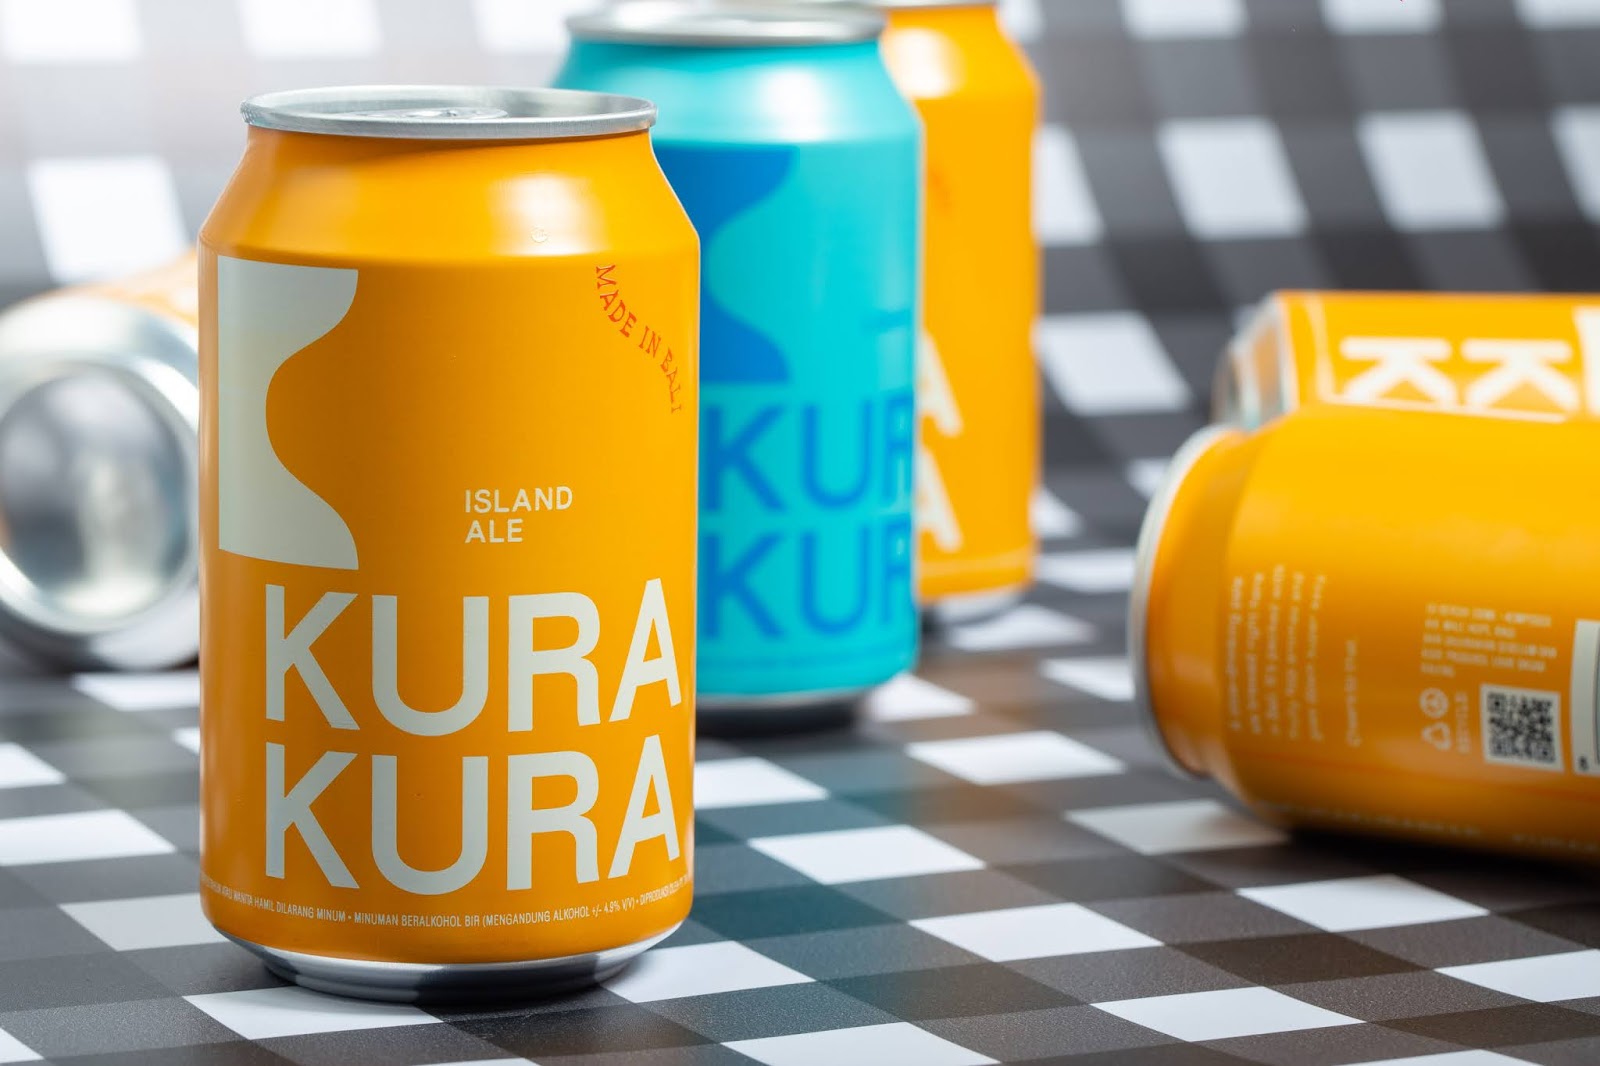 Kura Kura啤酒包装设计